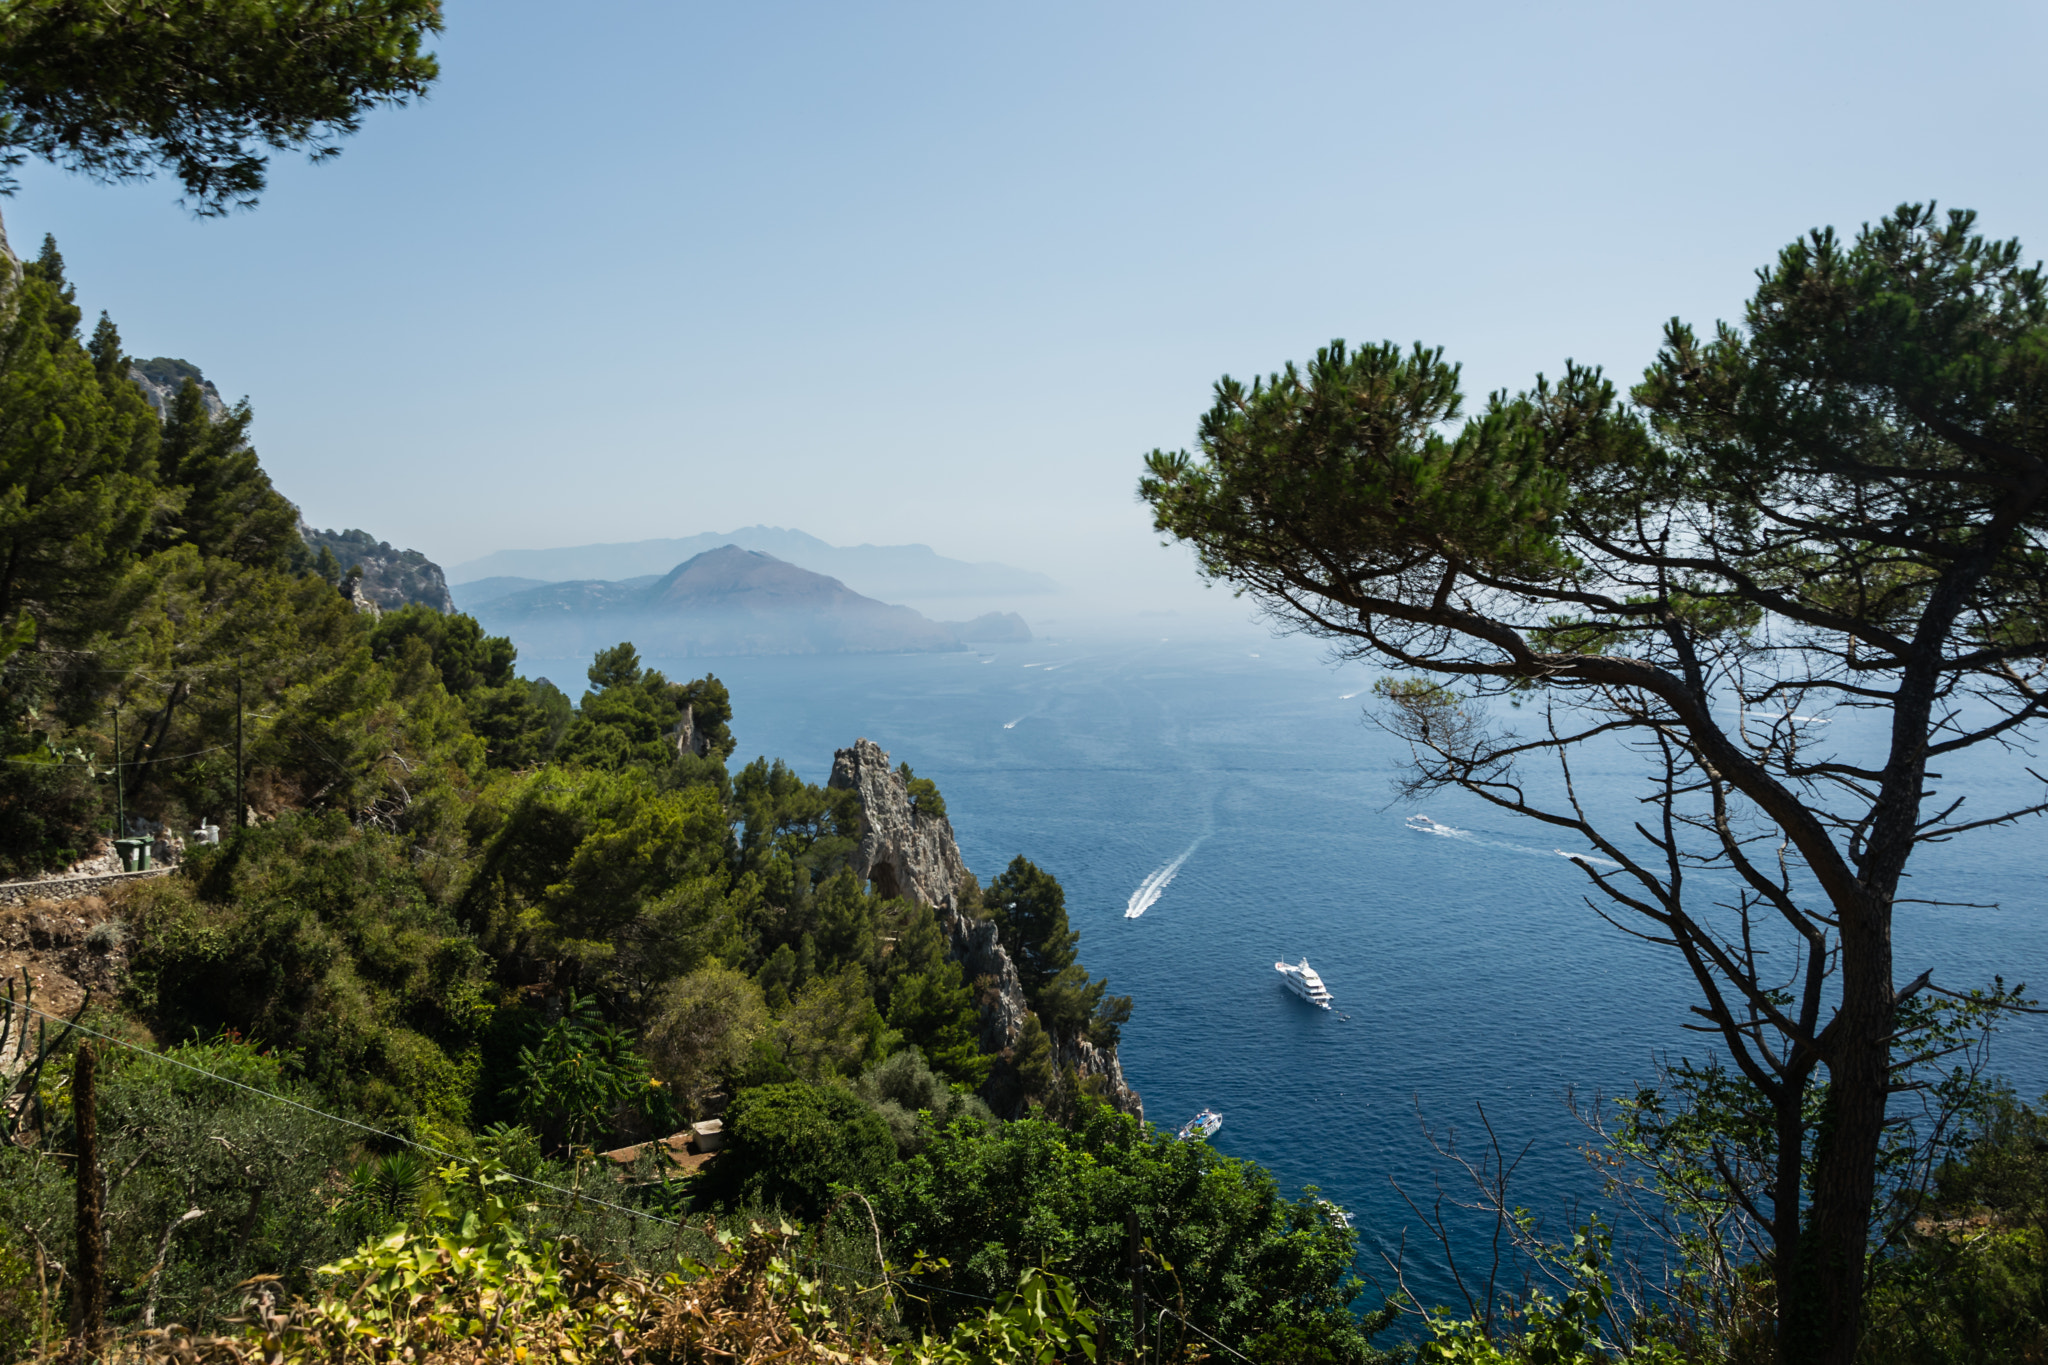 The nature of Capri